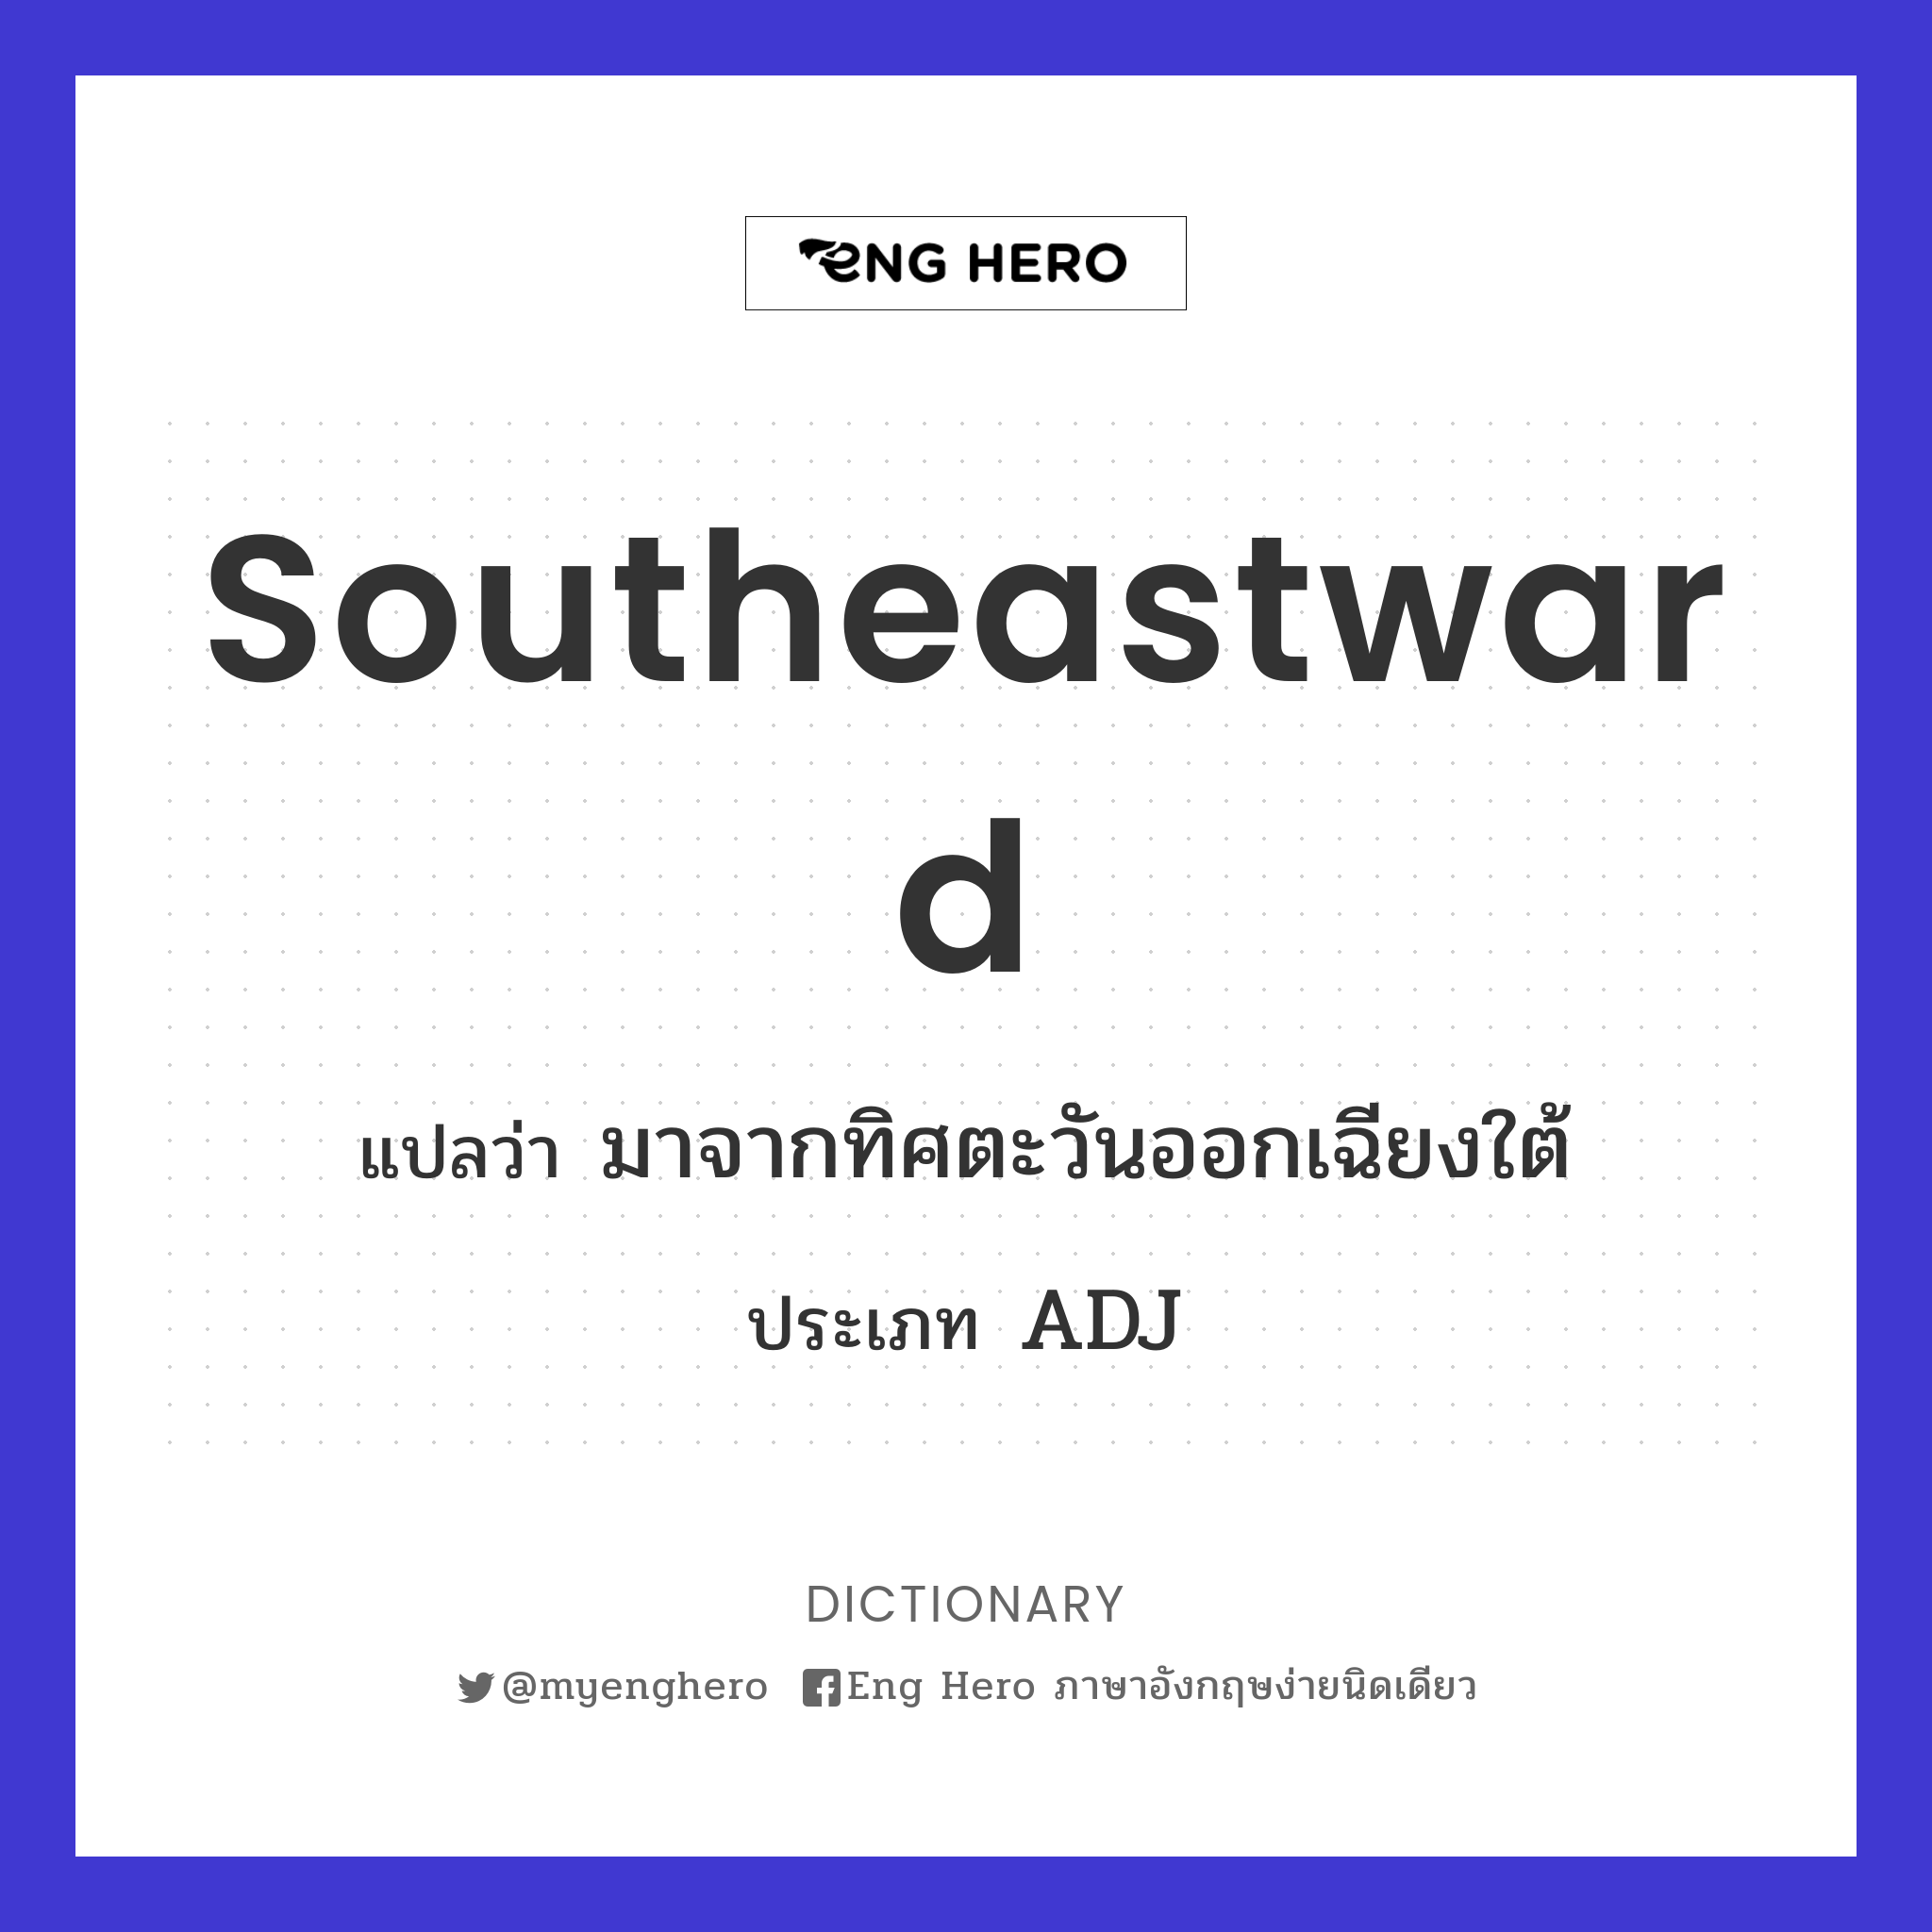 southeastward